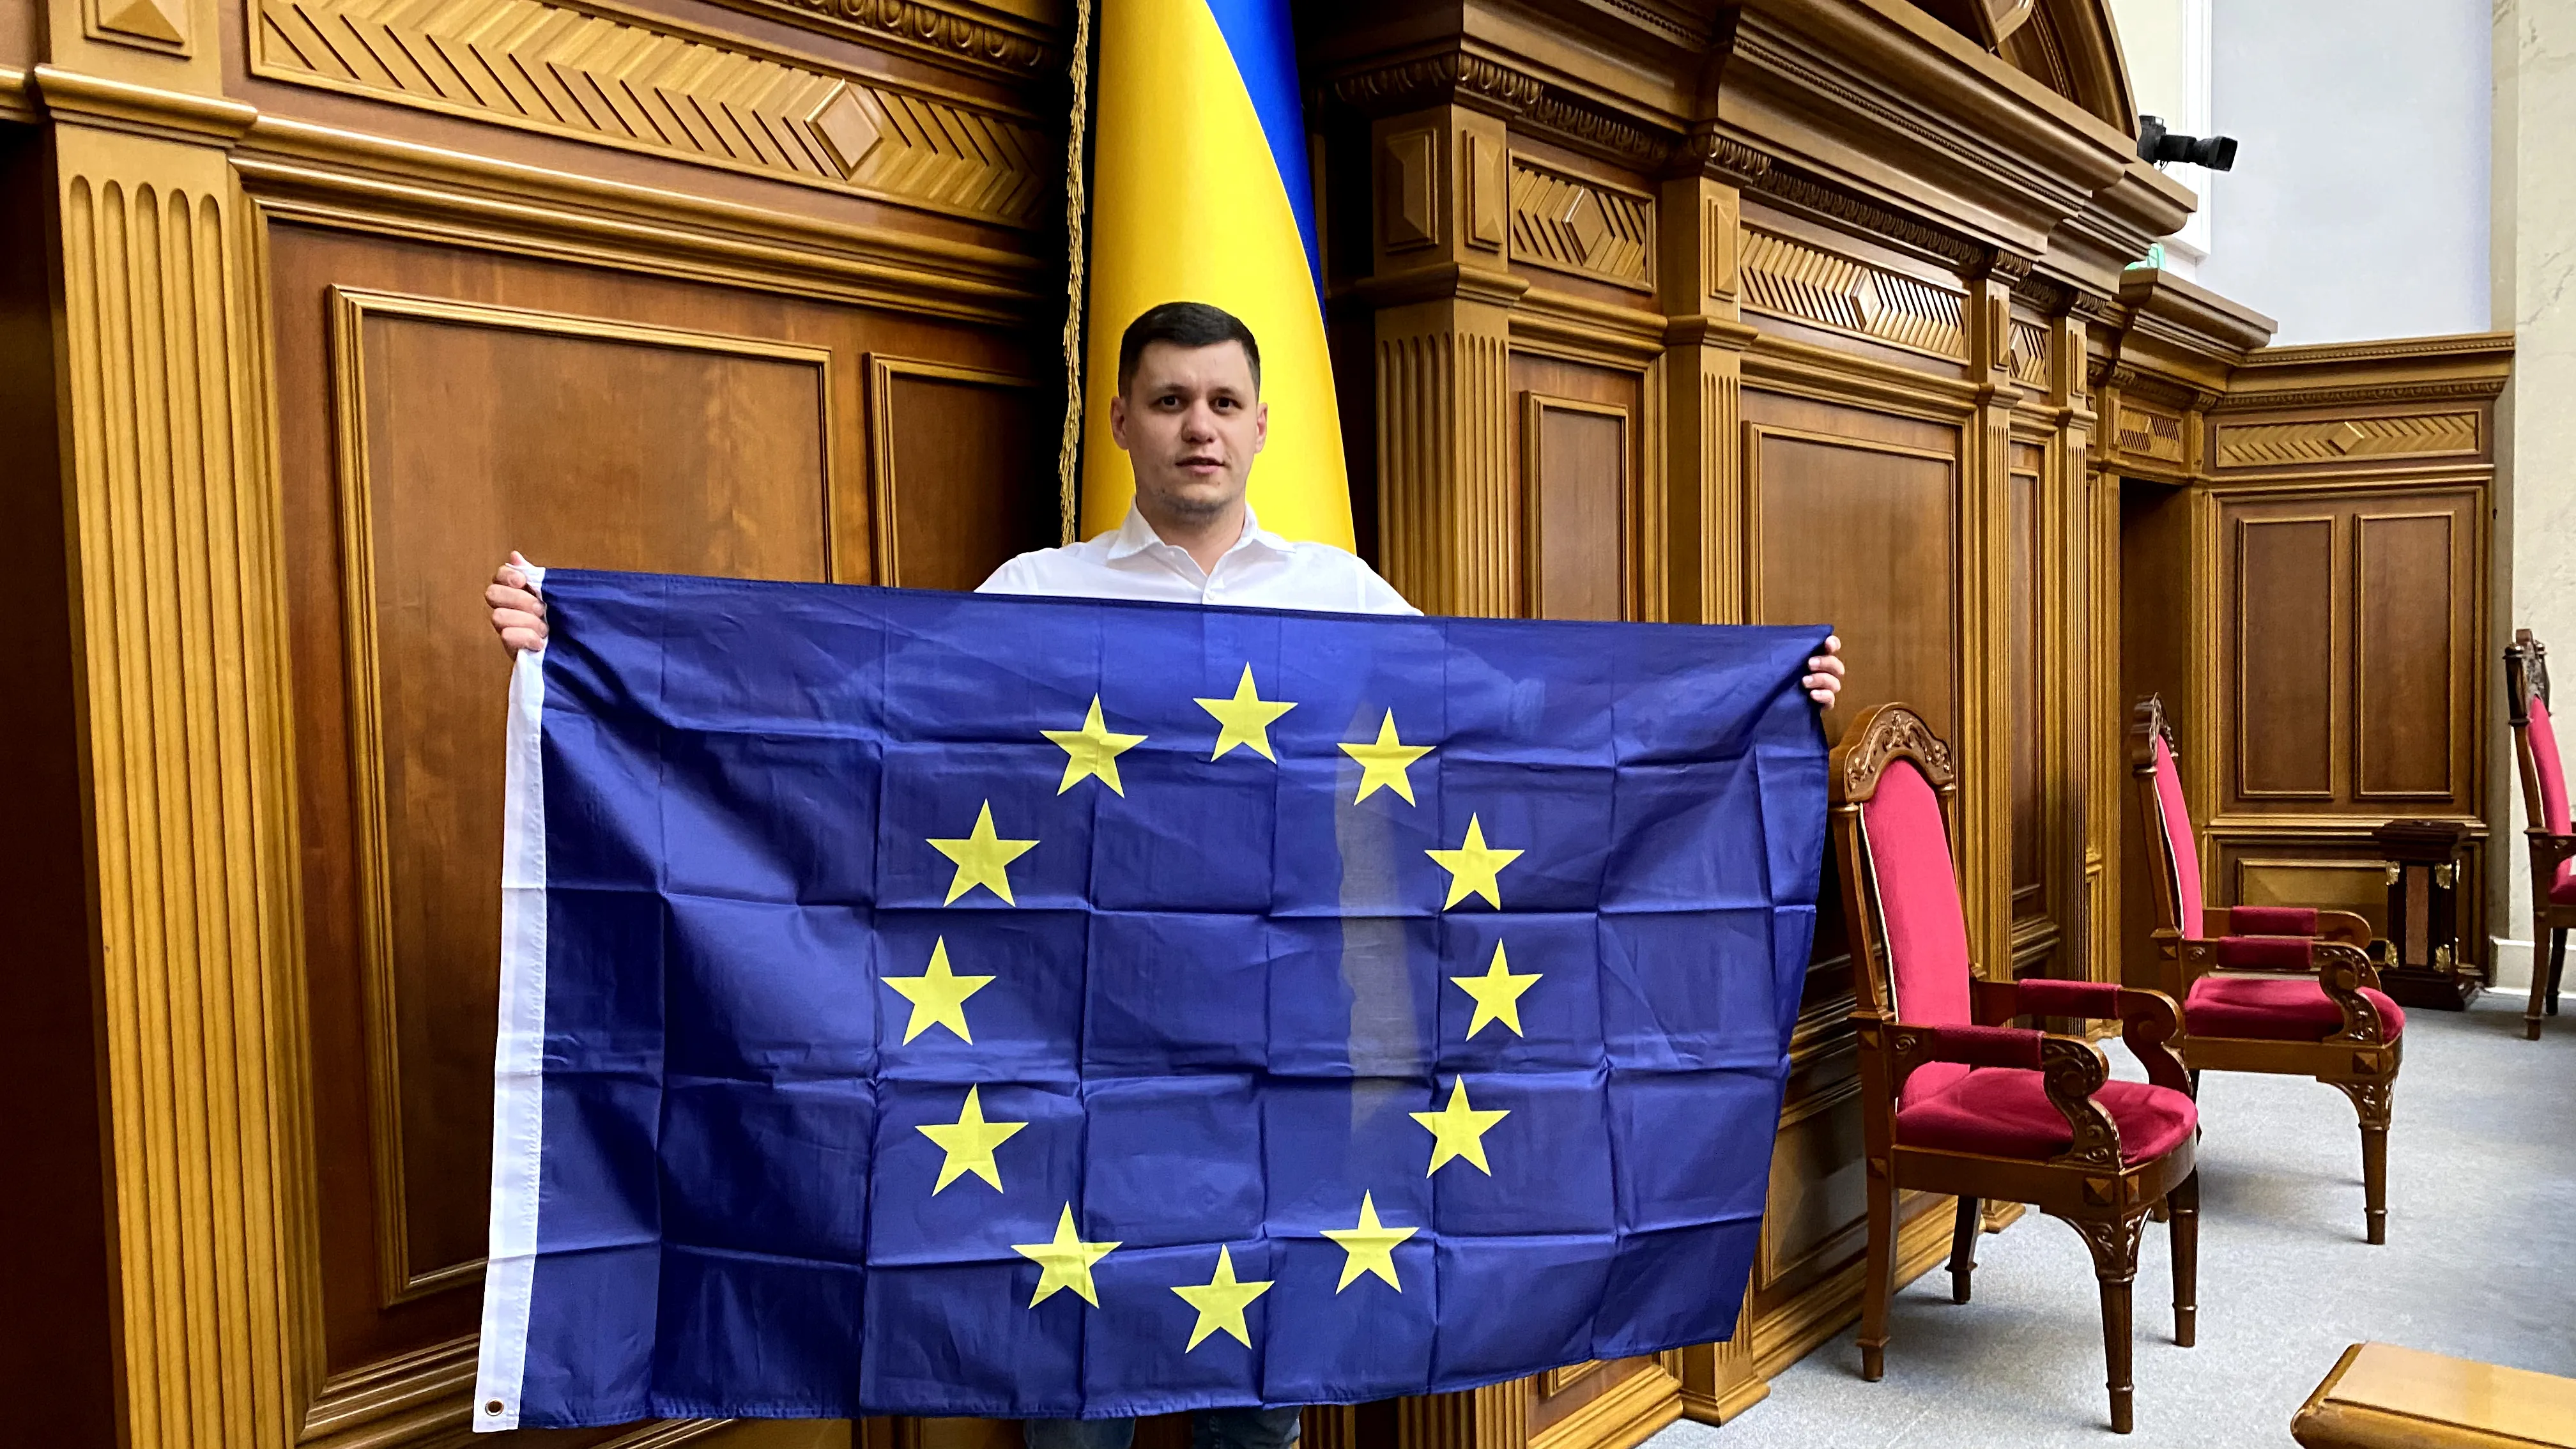 Грищук тримає флаг Євросоюза в ВРУ